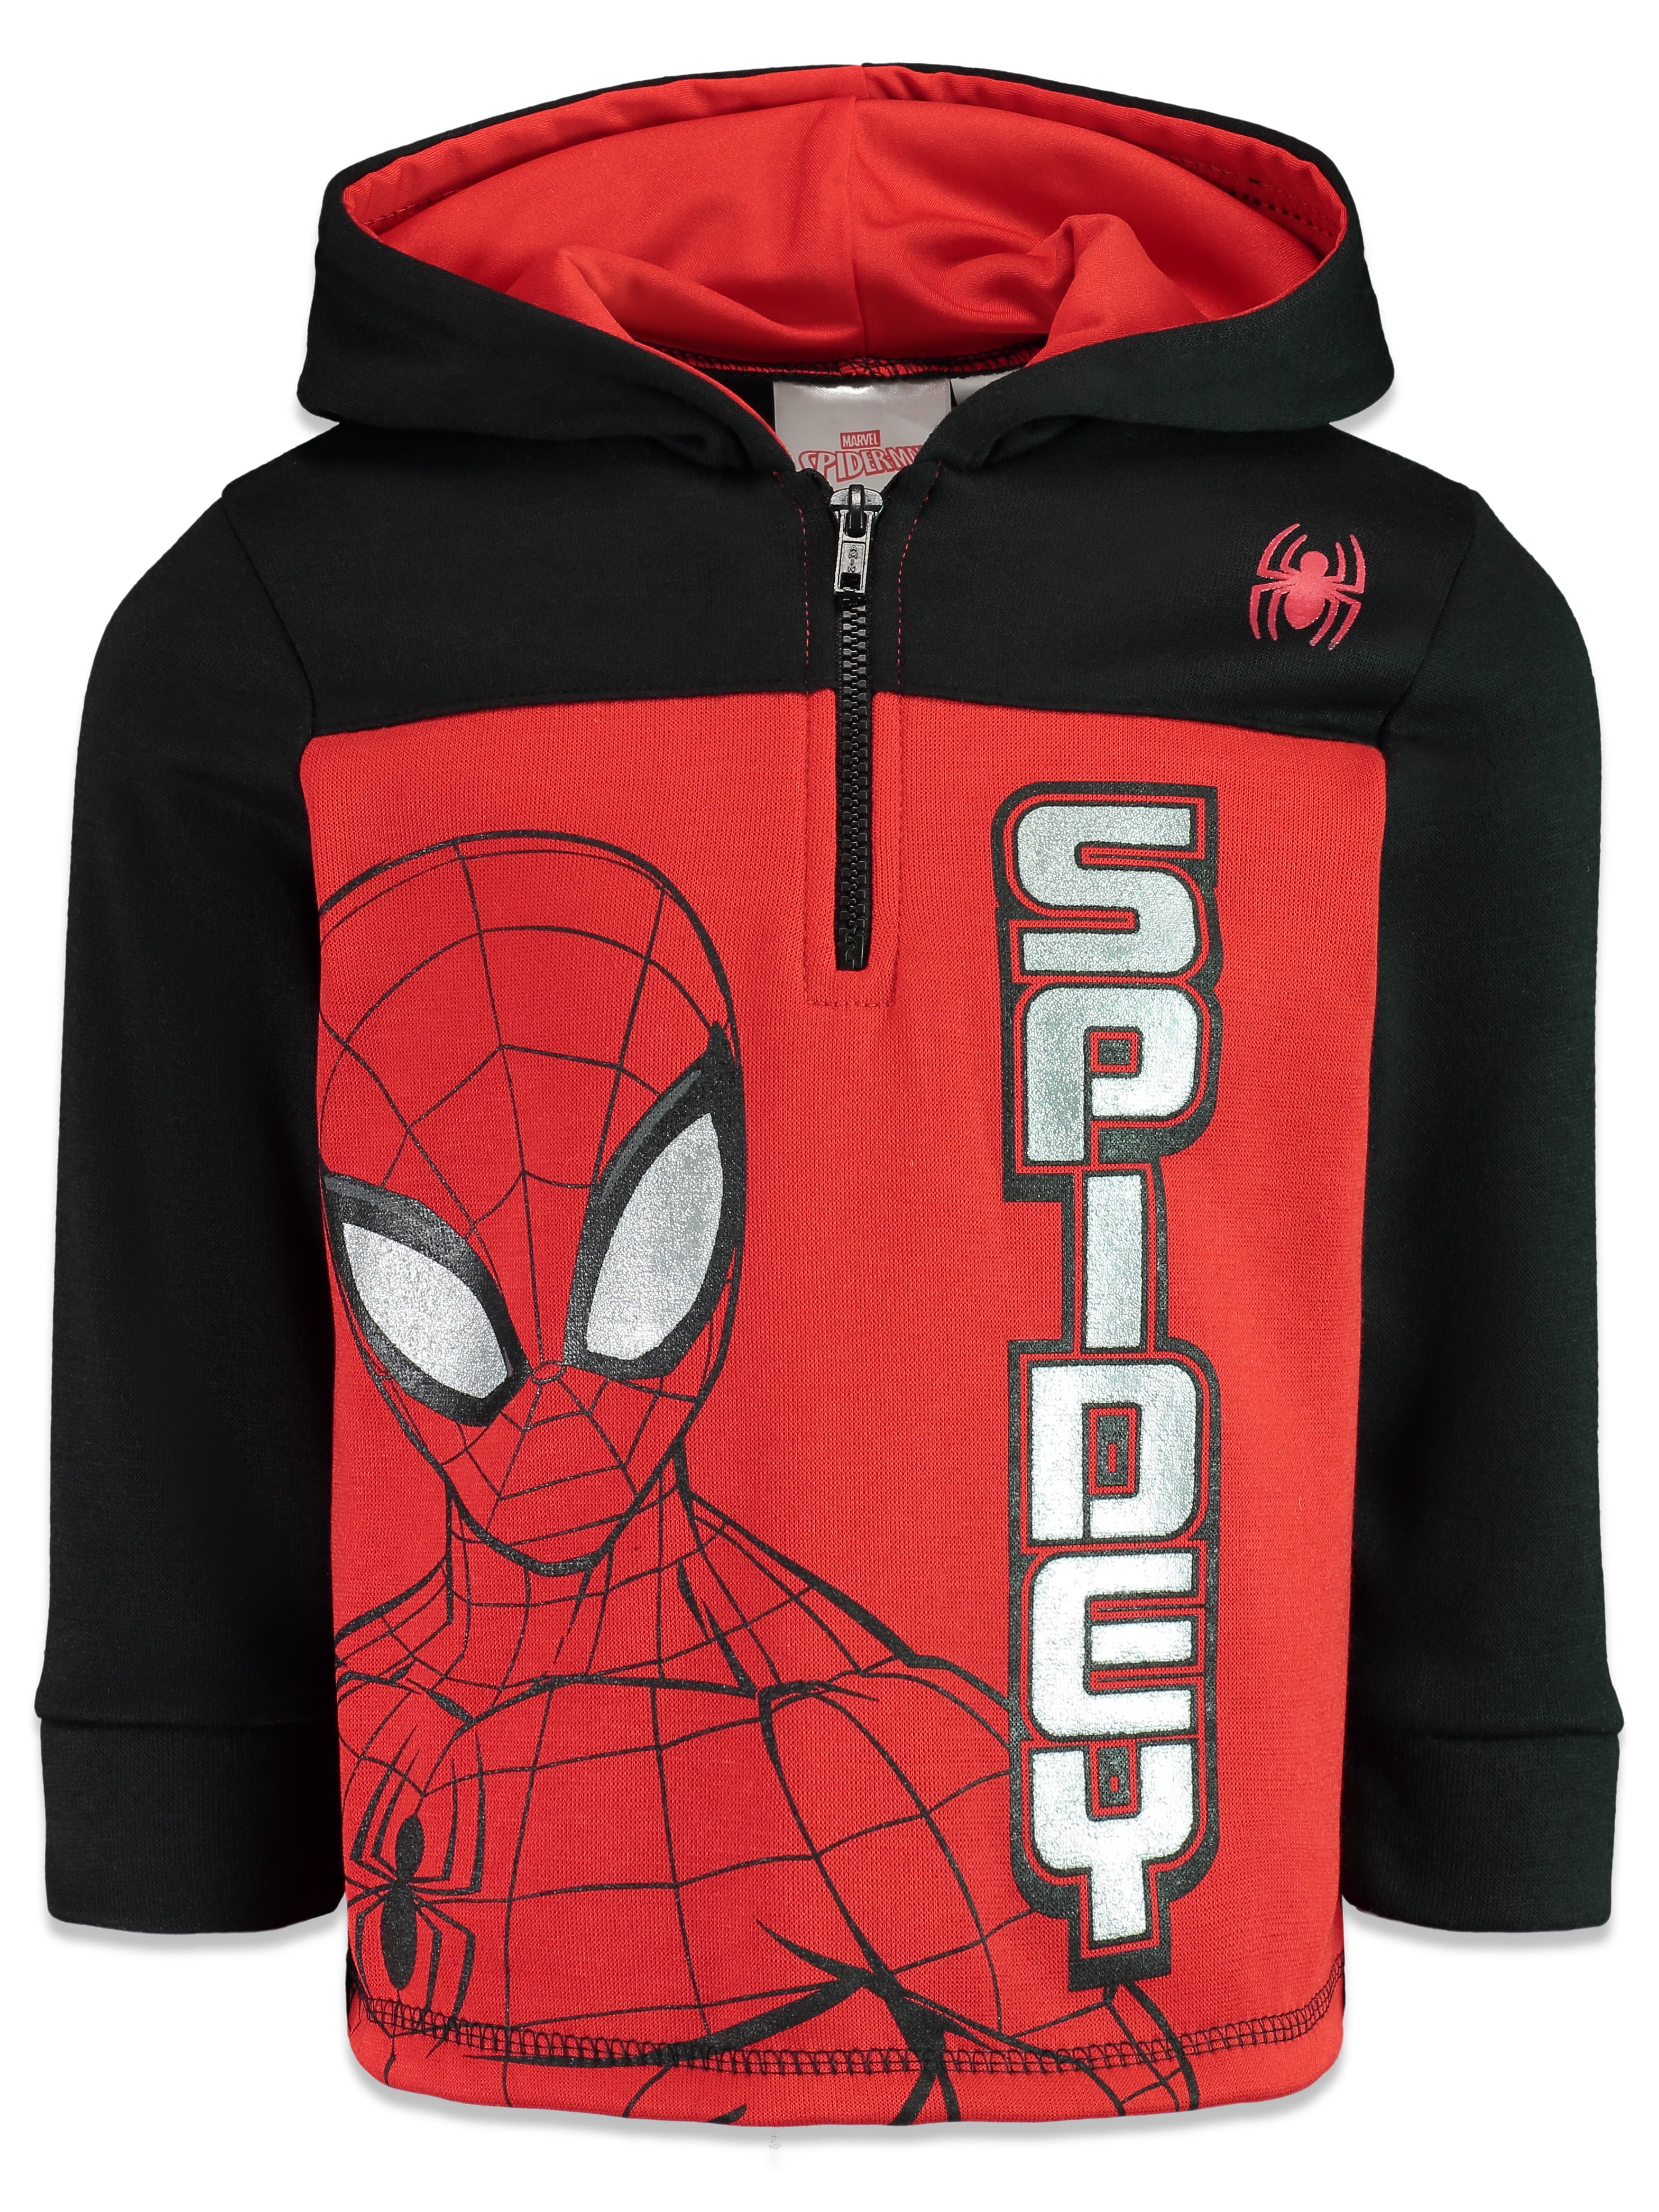 Marvel Comics Boys Avengers SPIDERMAN Costume Hoodie Jacket Sweatshirt 2T-5T 